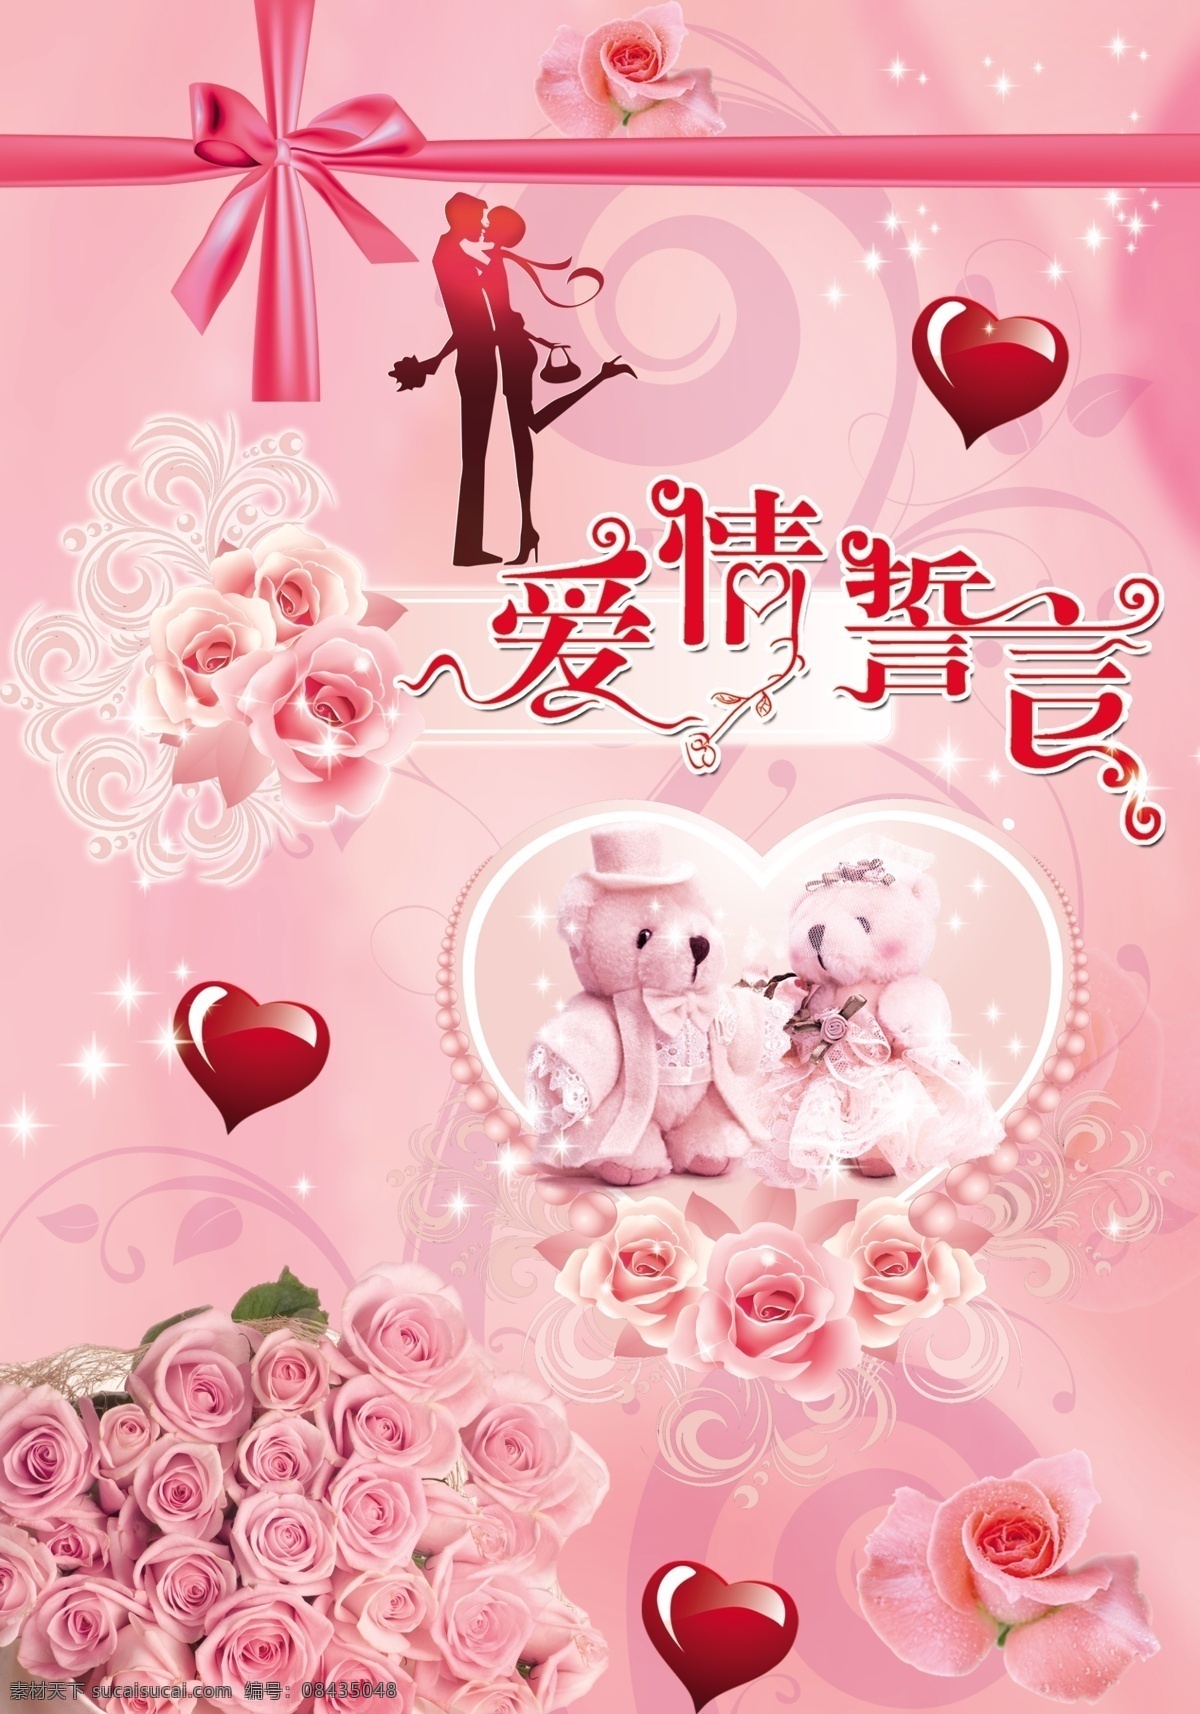 爱情誓言 玫瑰花 蝴蝶结 情侣熊 心形 粉色背景 广告设计模板 源文件